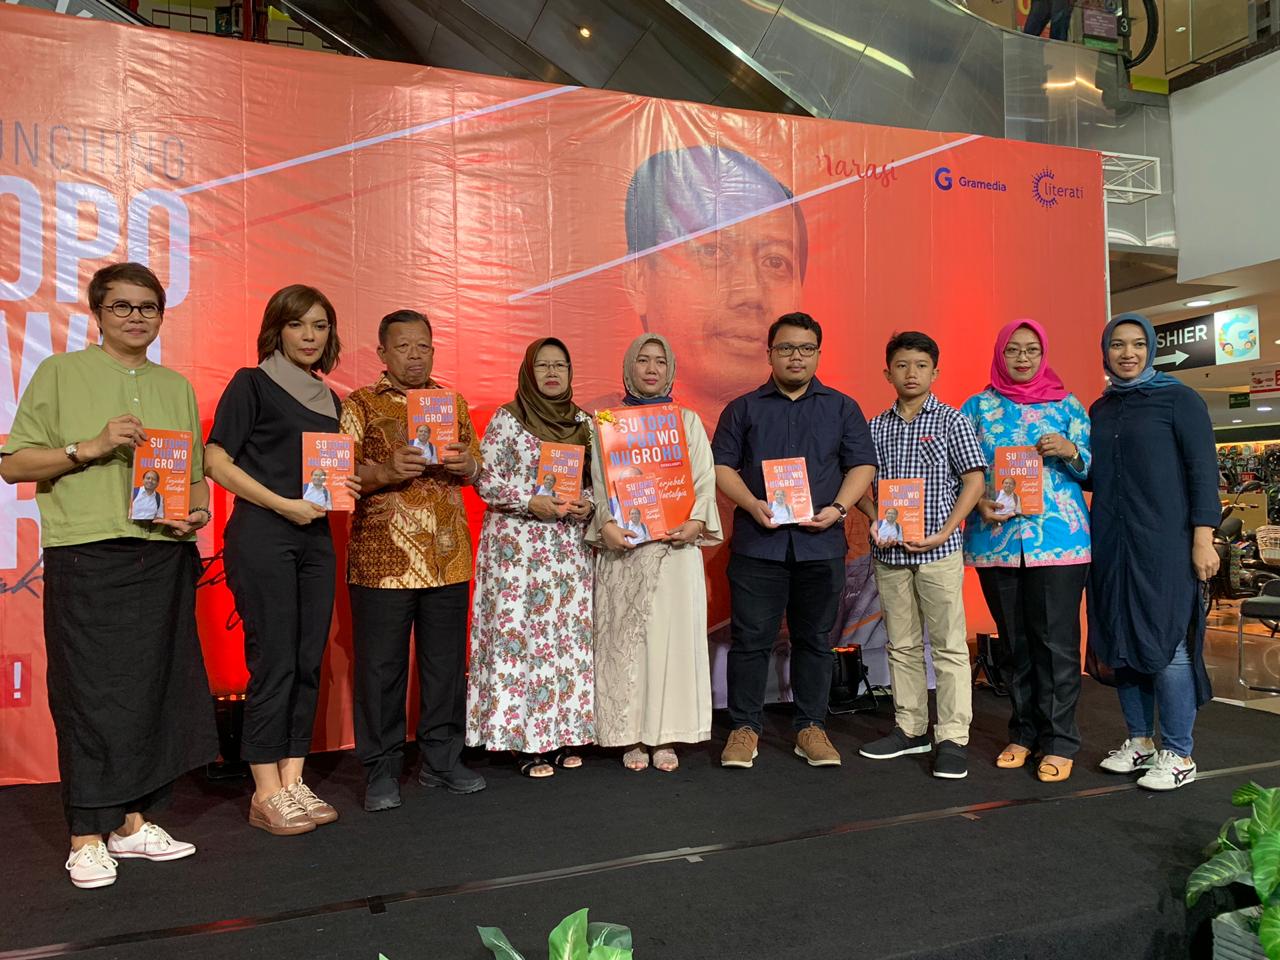 Suasana peluncuran buku Sutopo Purwo Nugroho penuh haru, di Gramedia Matraman, Jakarta, Minggu (1/9).